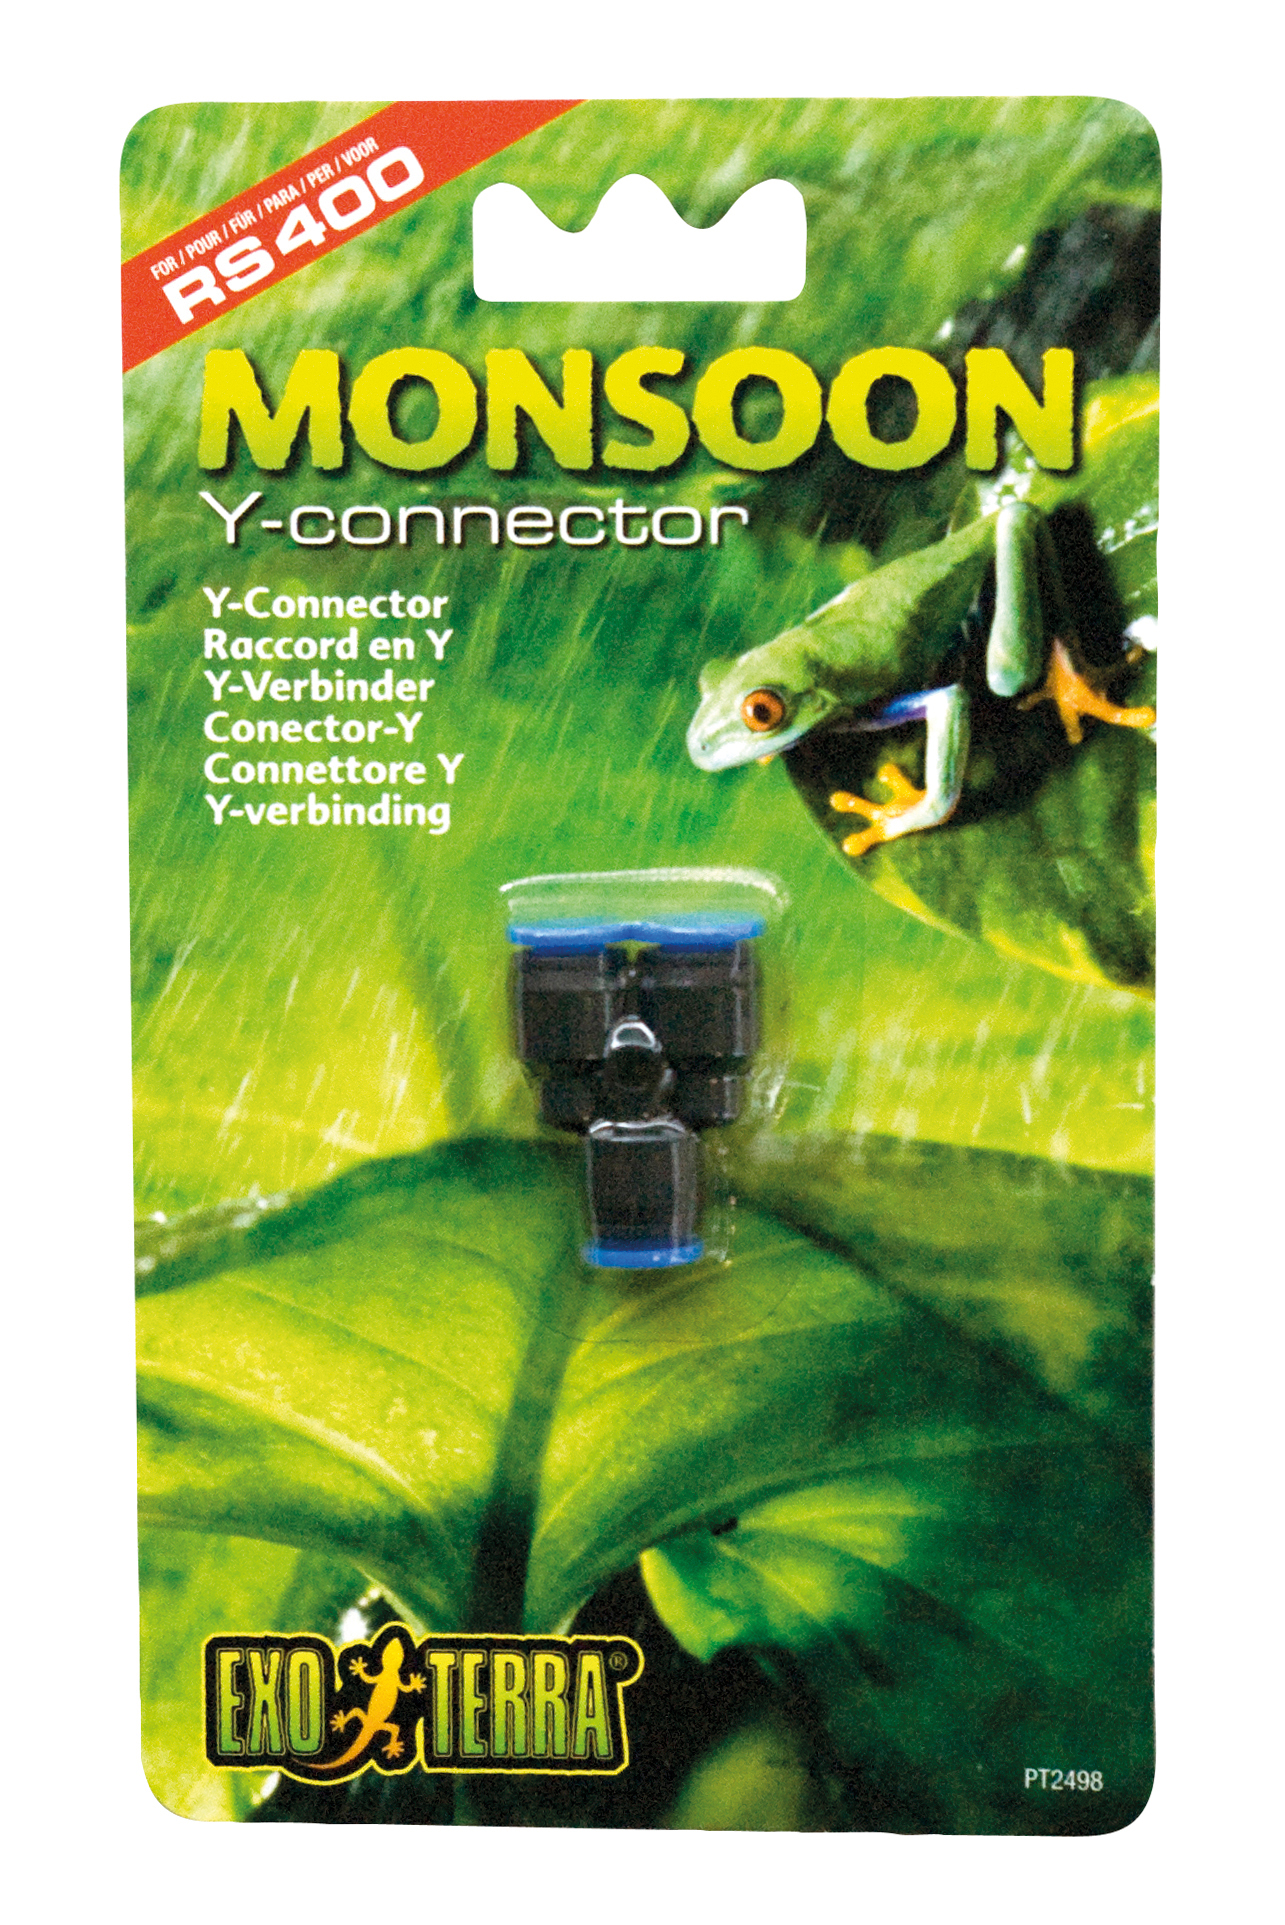 Ex monsoon y-verbinder für schlauch - Product shot